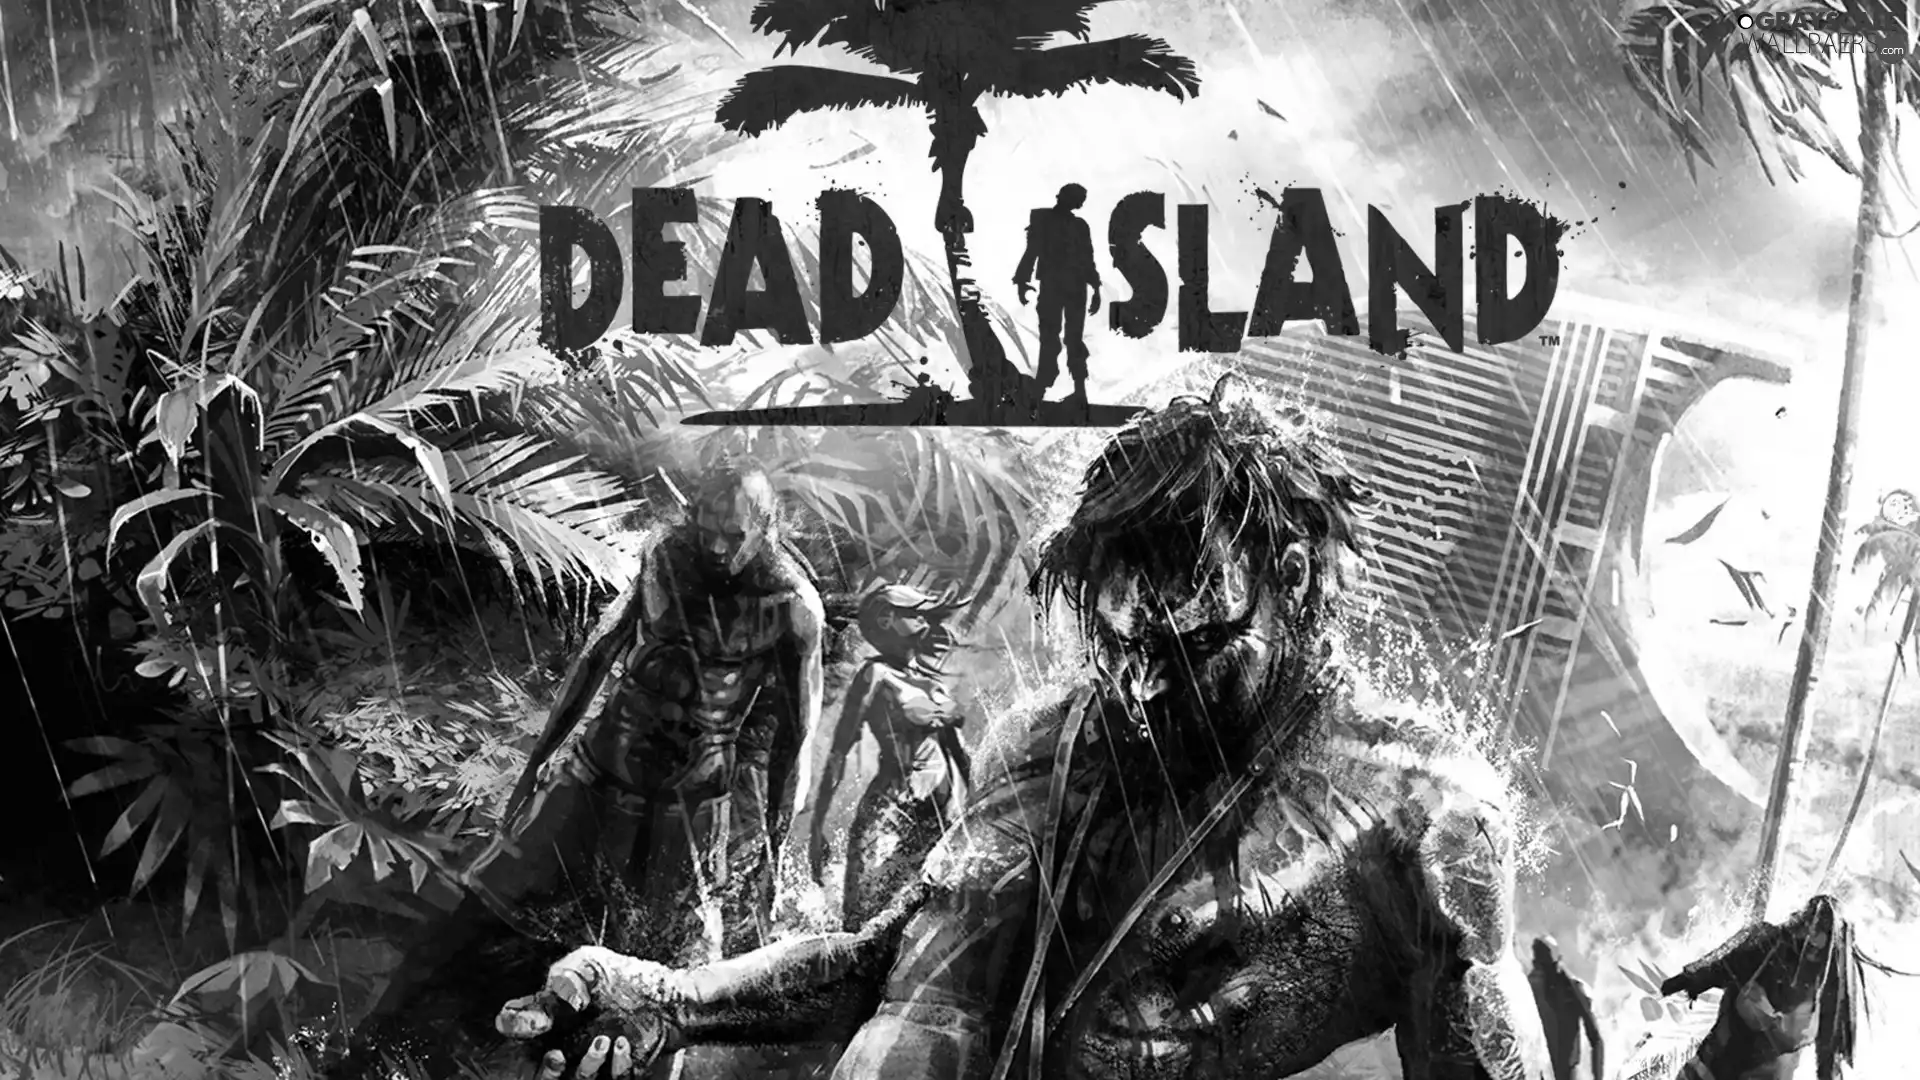 Dead Island, zombie